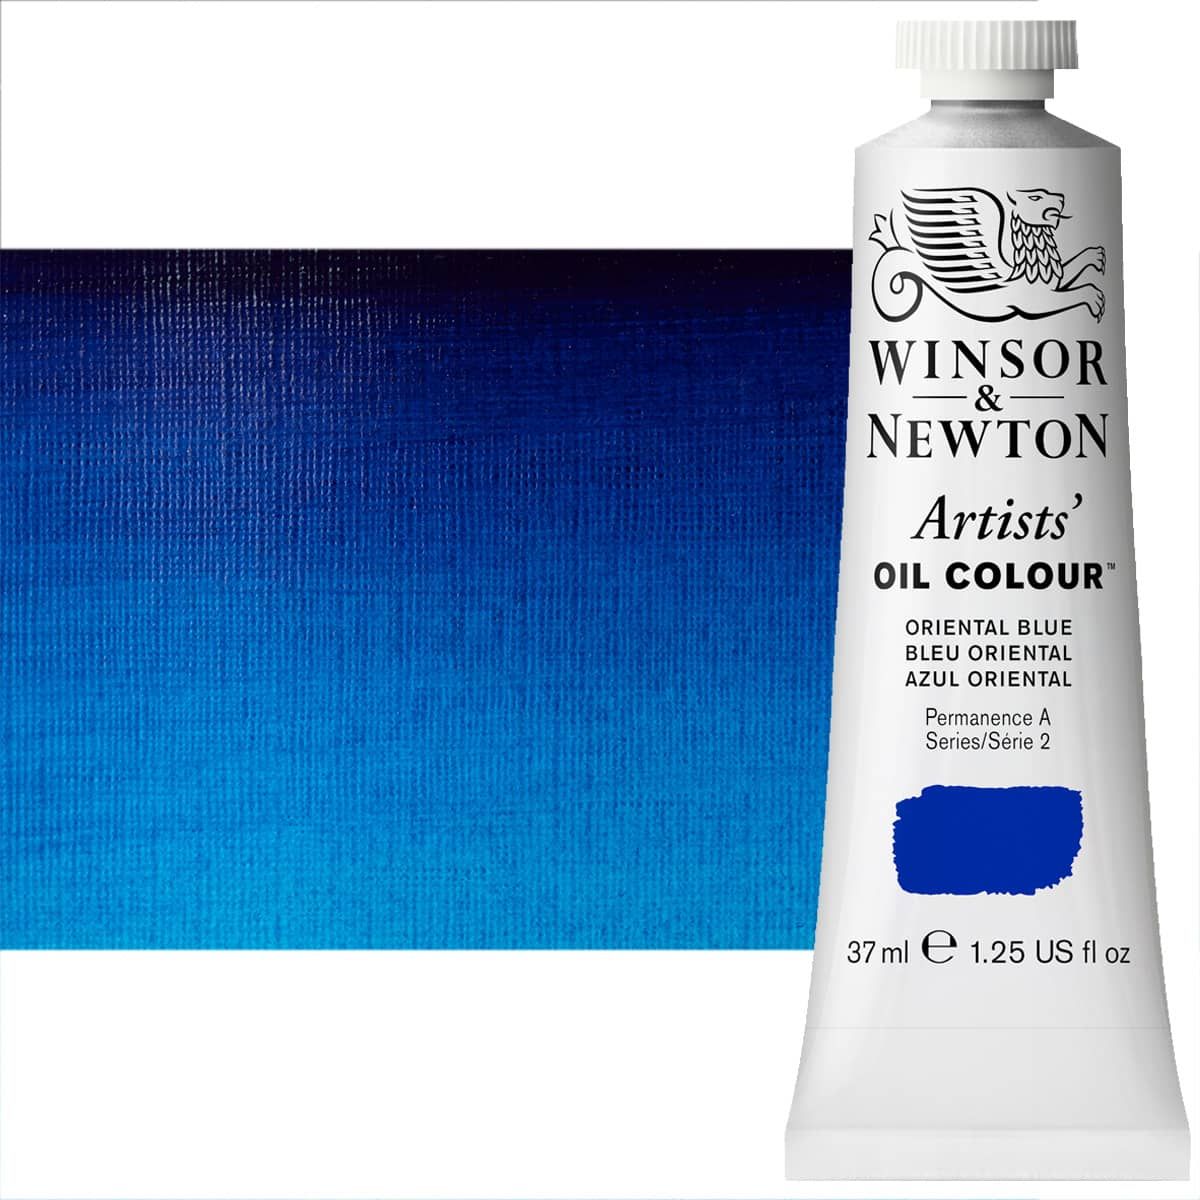 Winsor & Newton Artists' Oil - Titanium White, 200ml Tube